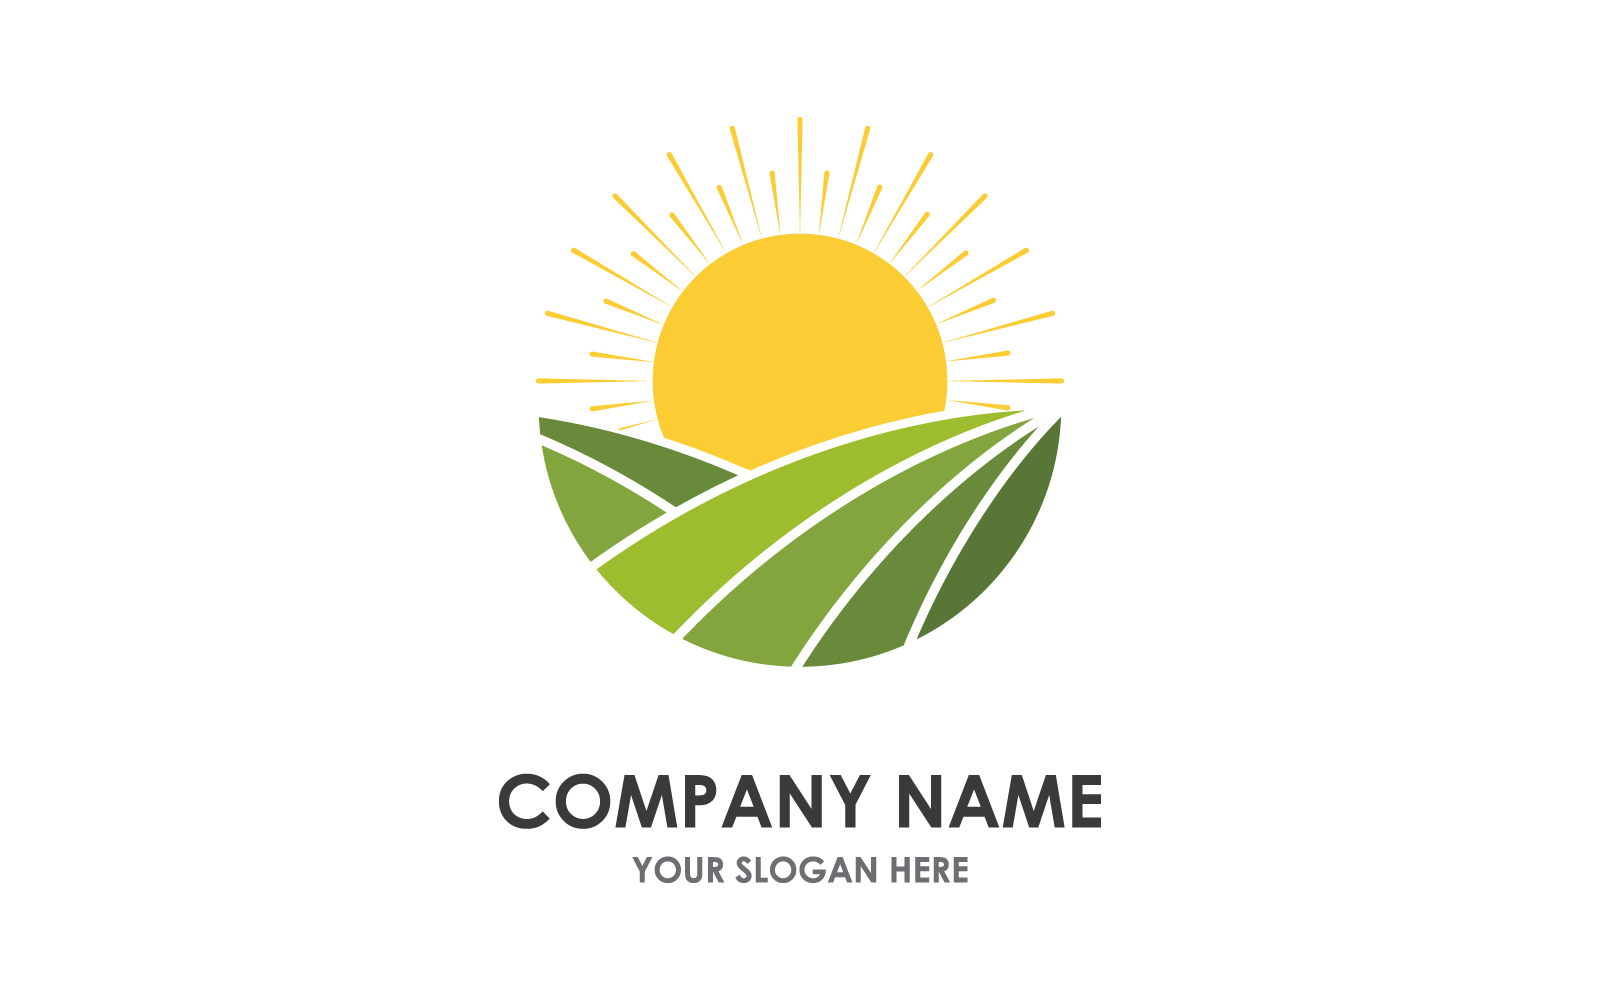 Plantilla de diseño plano del logotipo de la casa de granja